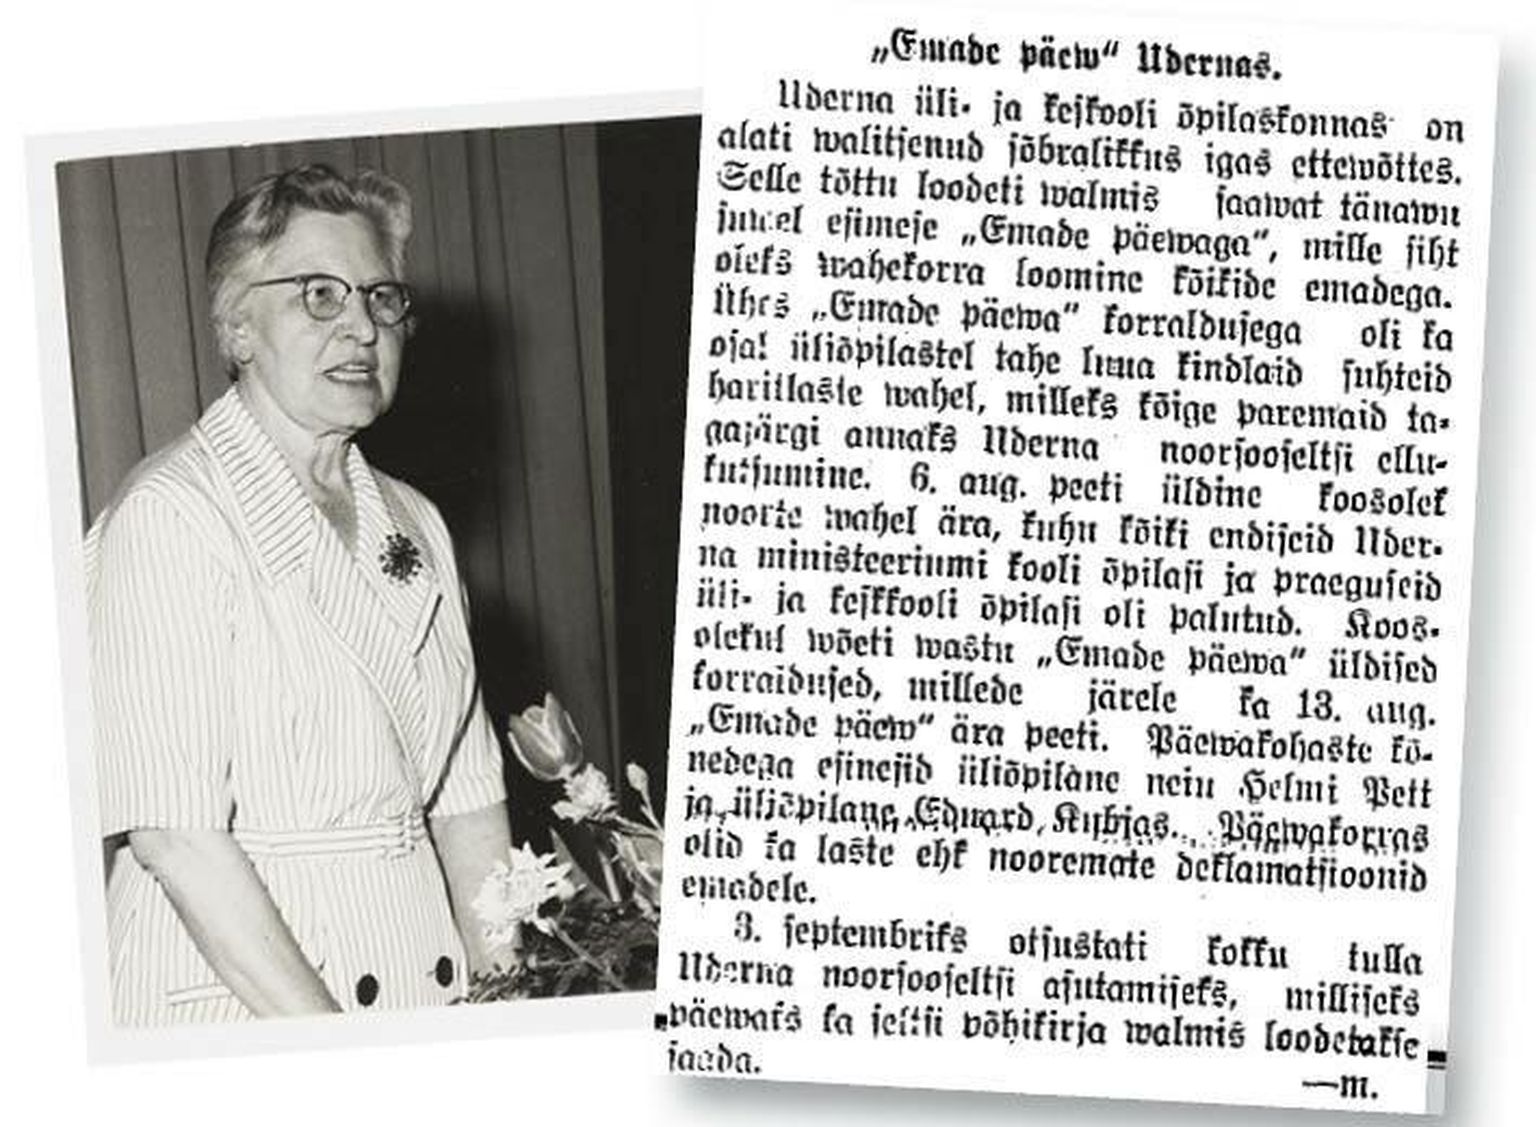 Ajalehest Kaja selgub, et esimest korda korraldas kirjanik Helmi Mäelo emadepäeva tähistamise 13. augustil 1922.